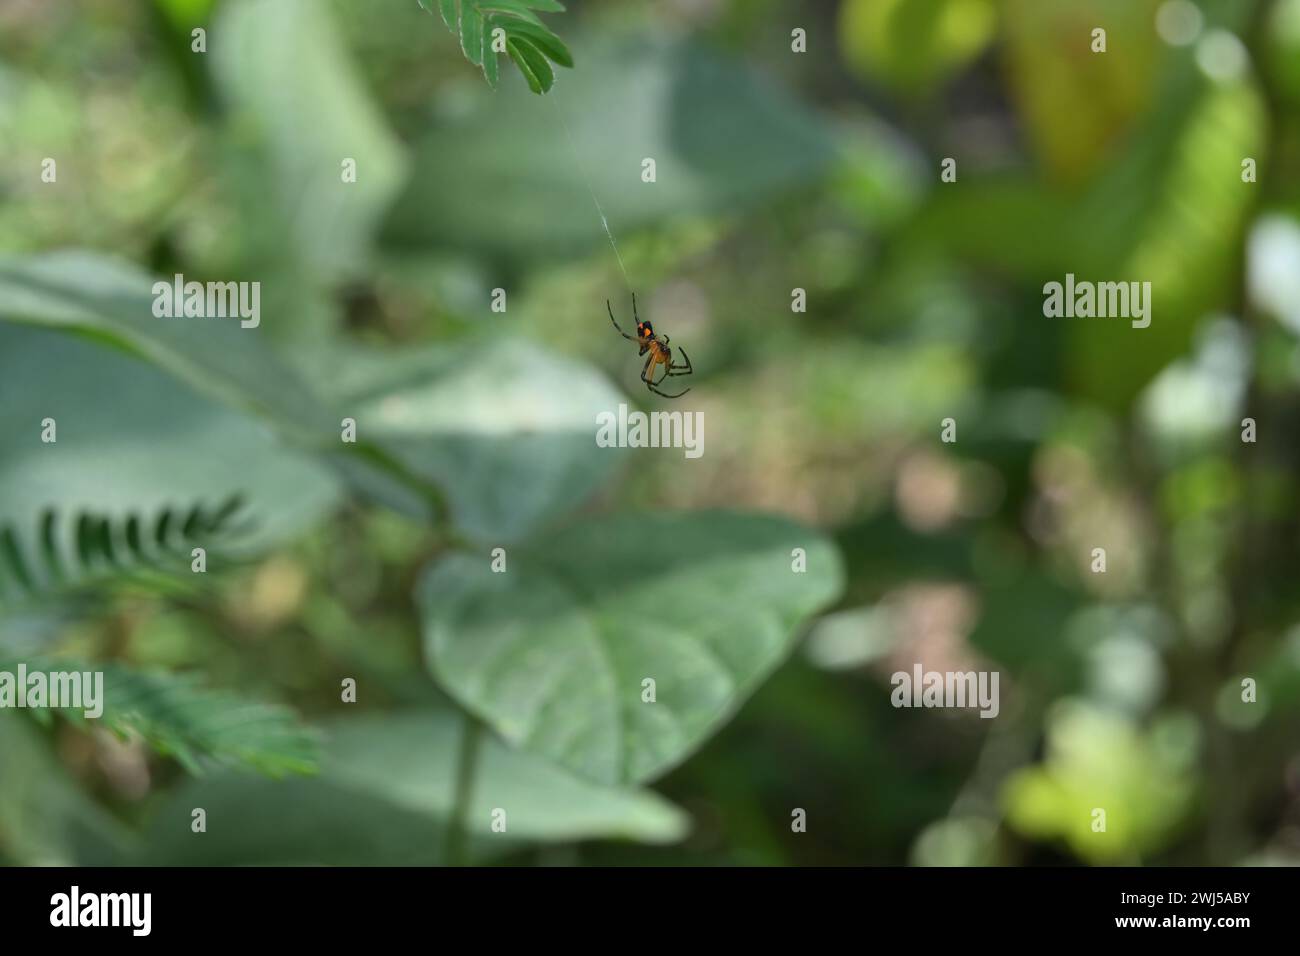 Vista ventrale di un piccolo ragno nero con le esclusive macchie di colore arancione sull'addome. Questo ragno è molto probabilmente un giovane orb di frutteto tessitore spi Foto Stock